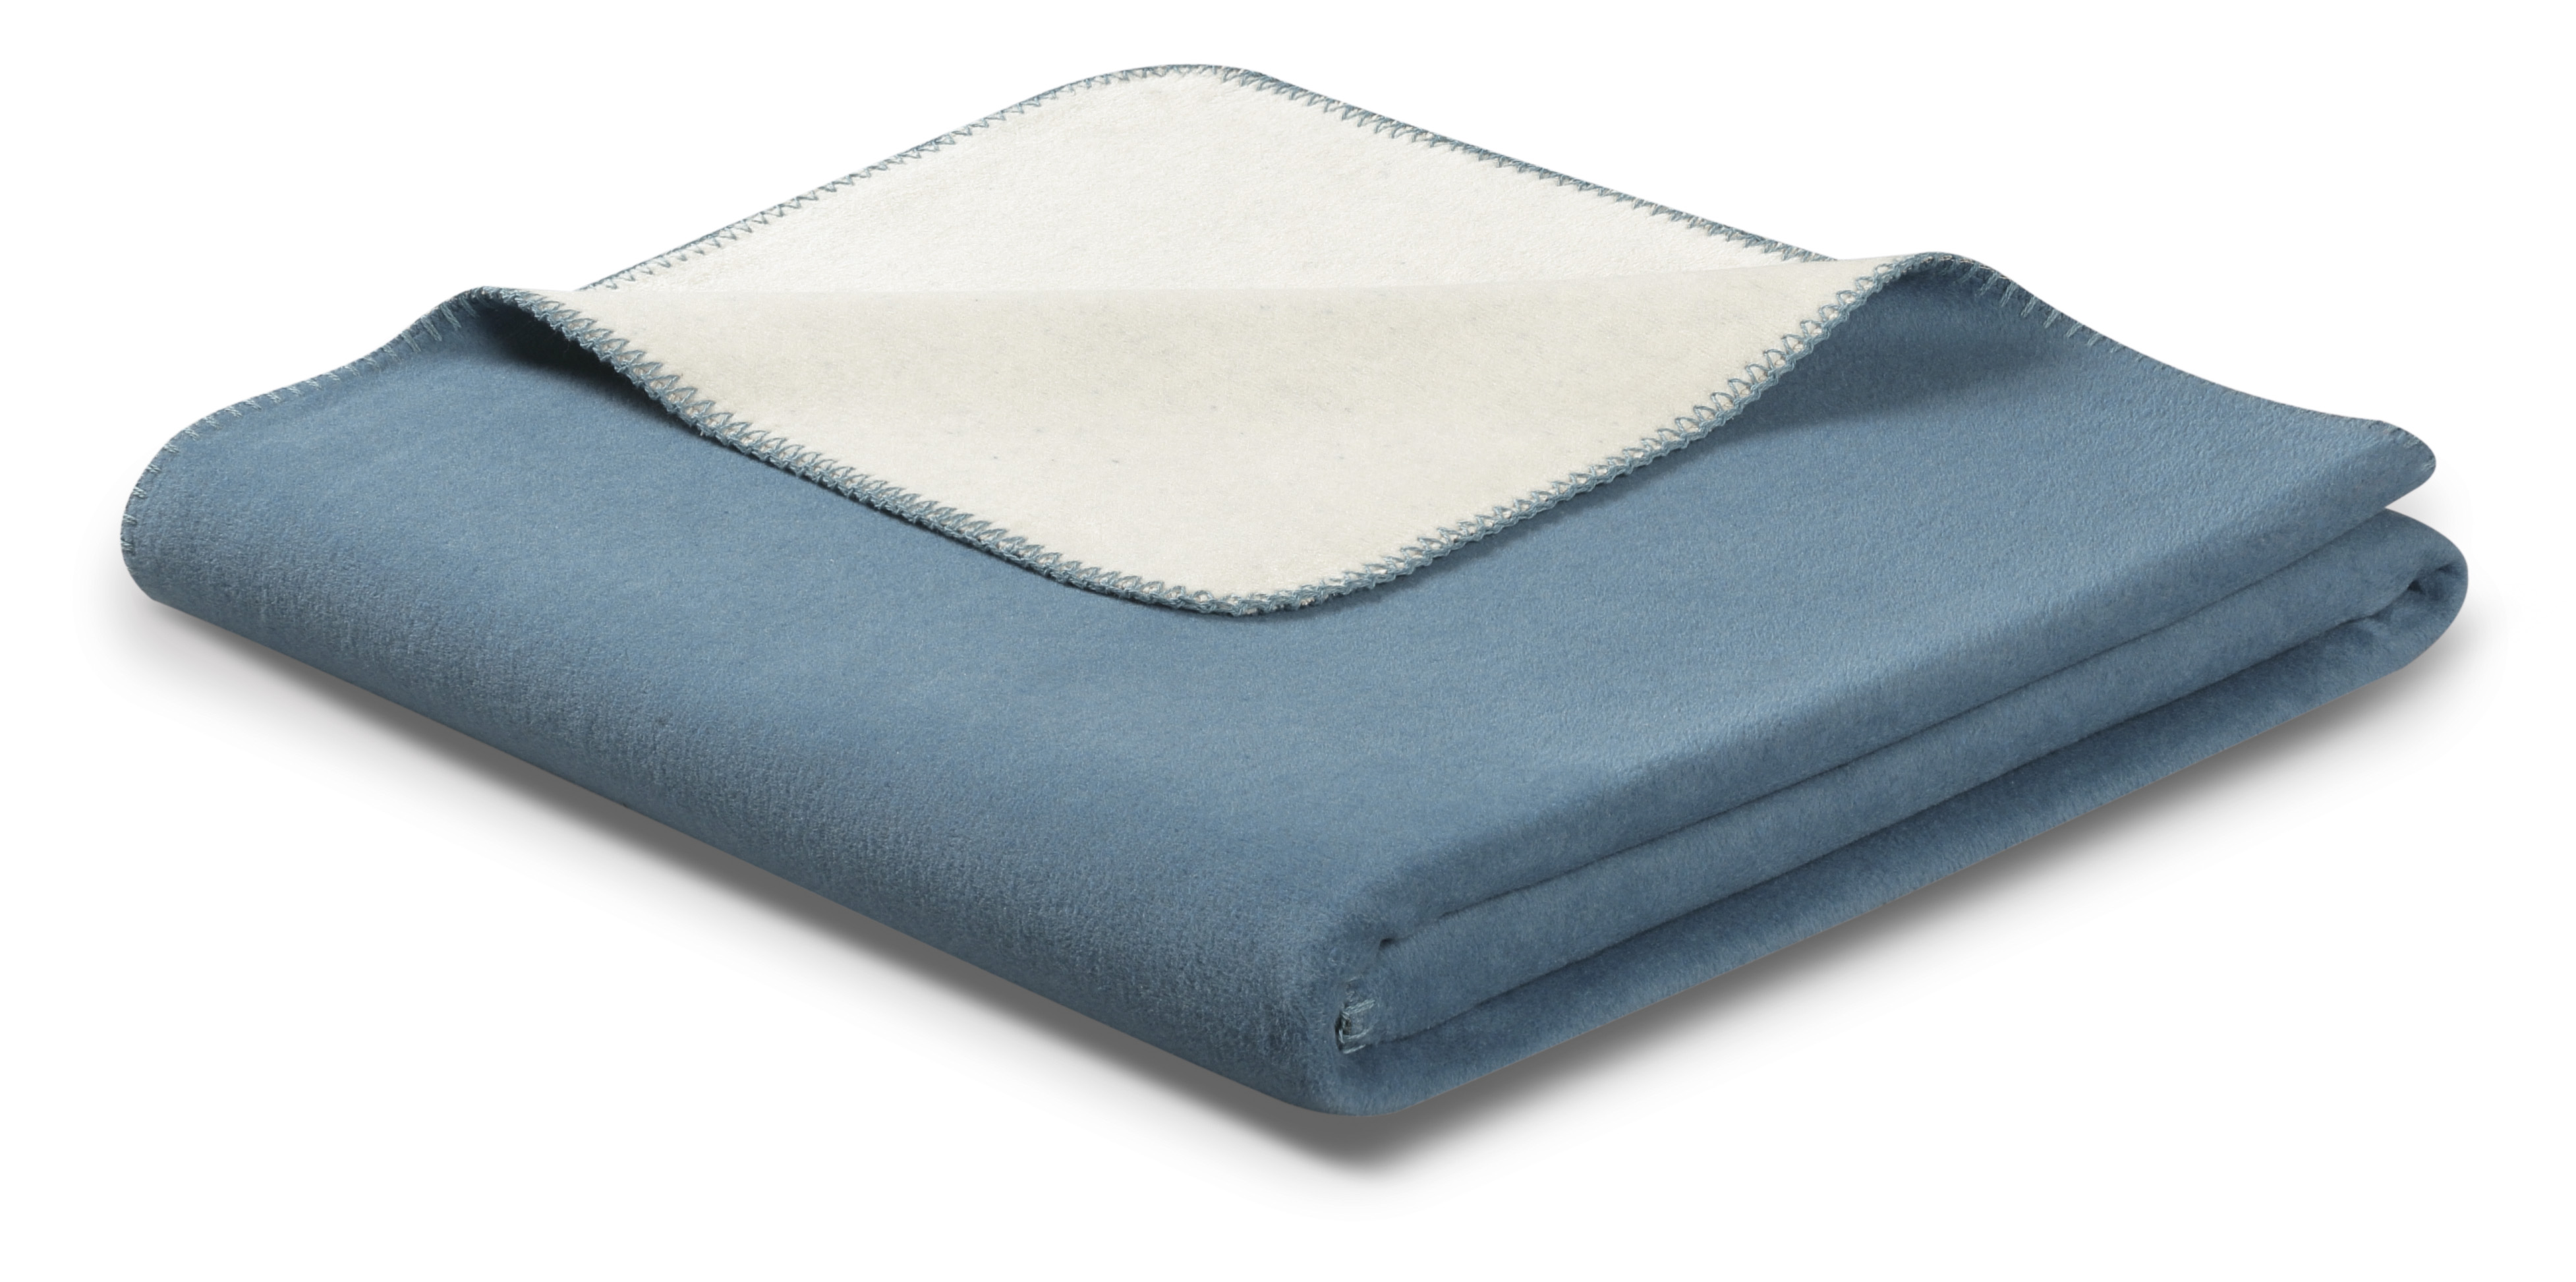 Schlichte Wohndecke "Duo Cotton" aus Baumwollmischgewebe in 150x200 cm in Blue Heaven - Ecru